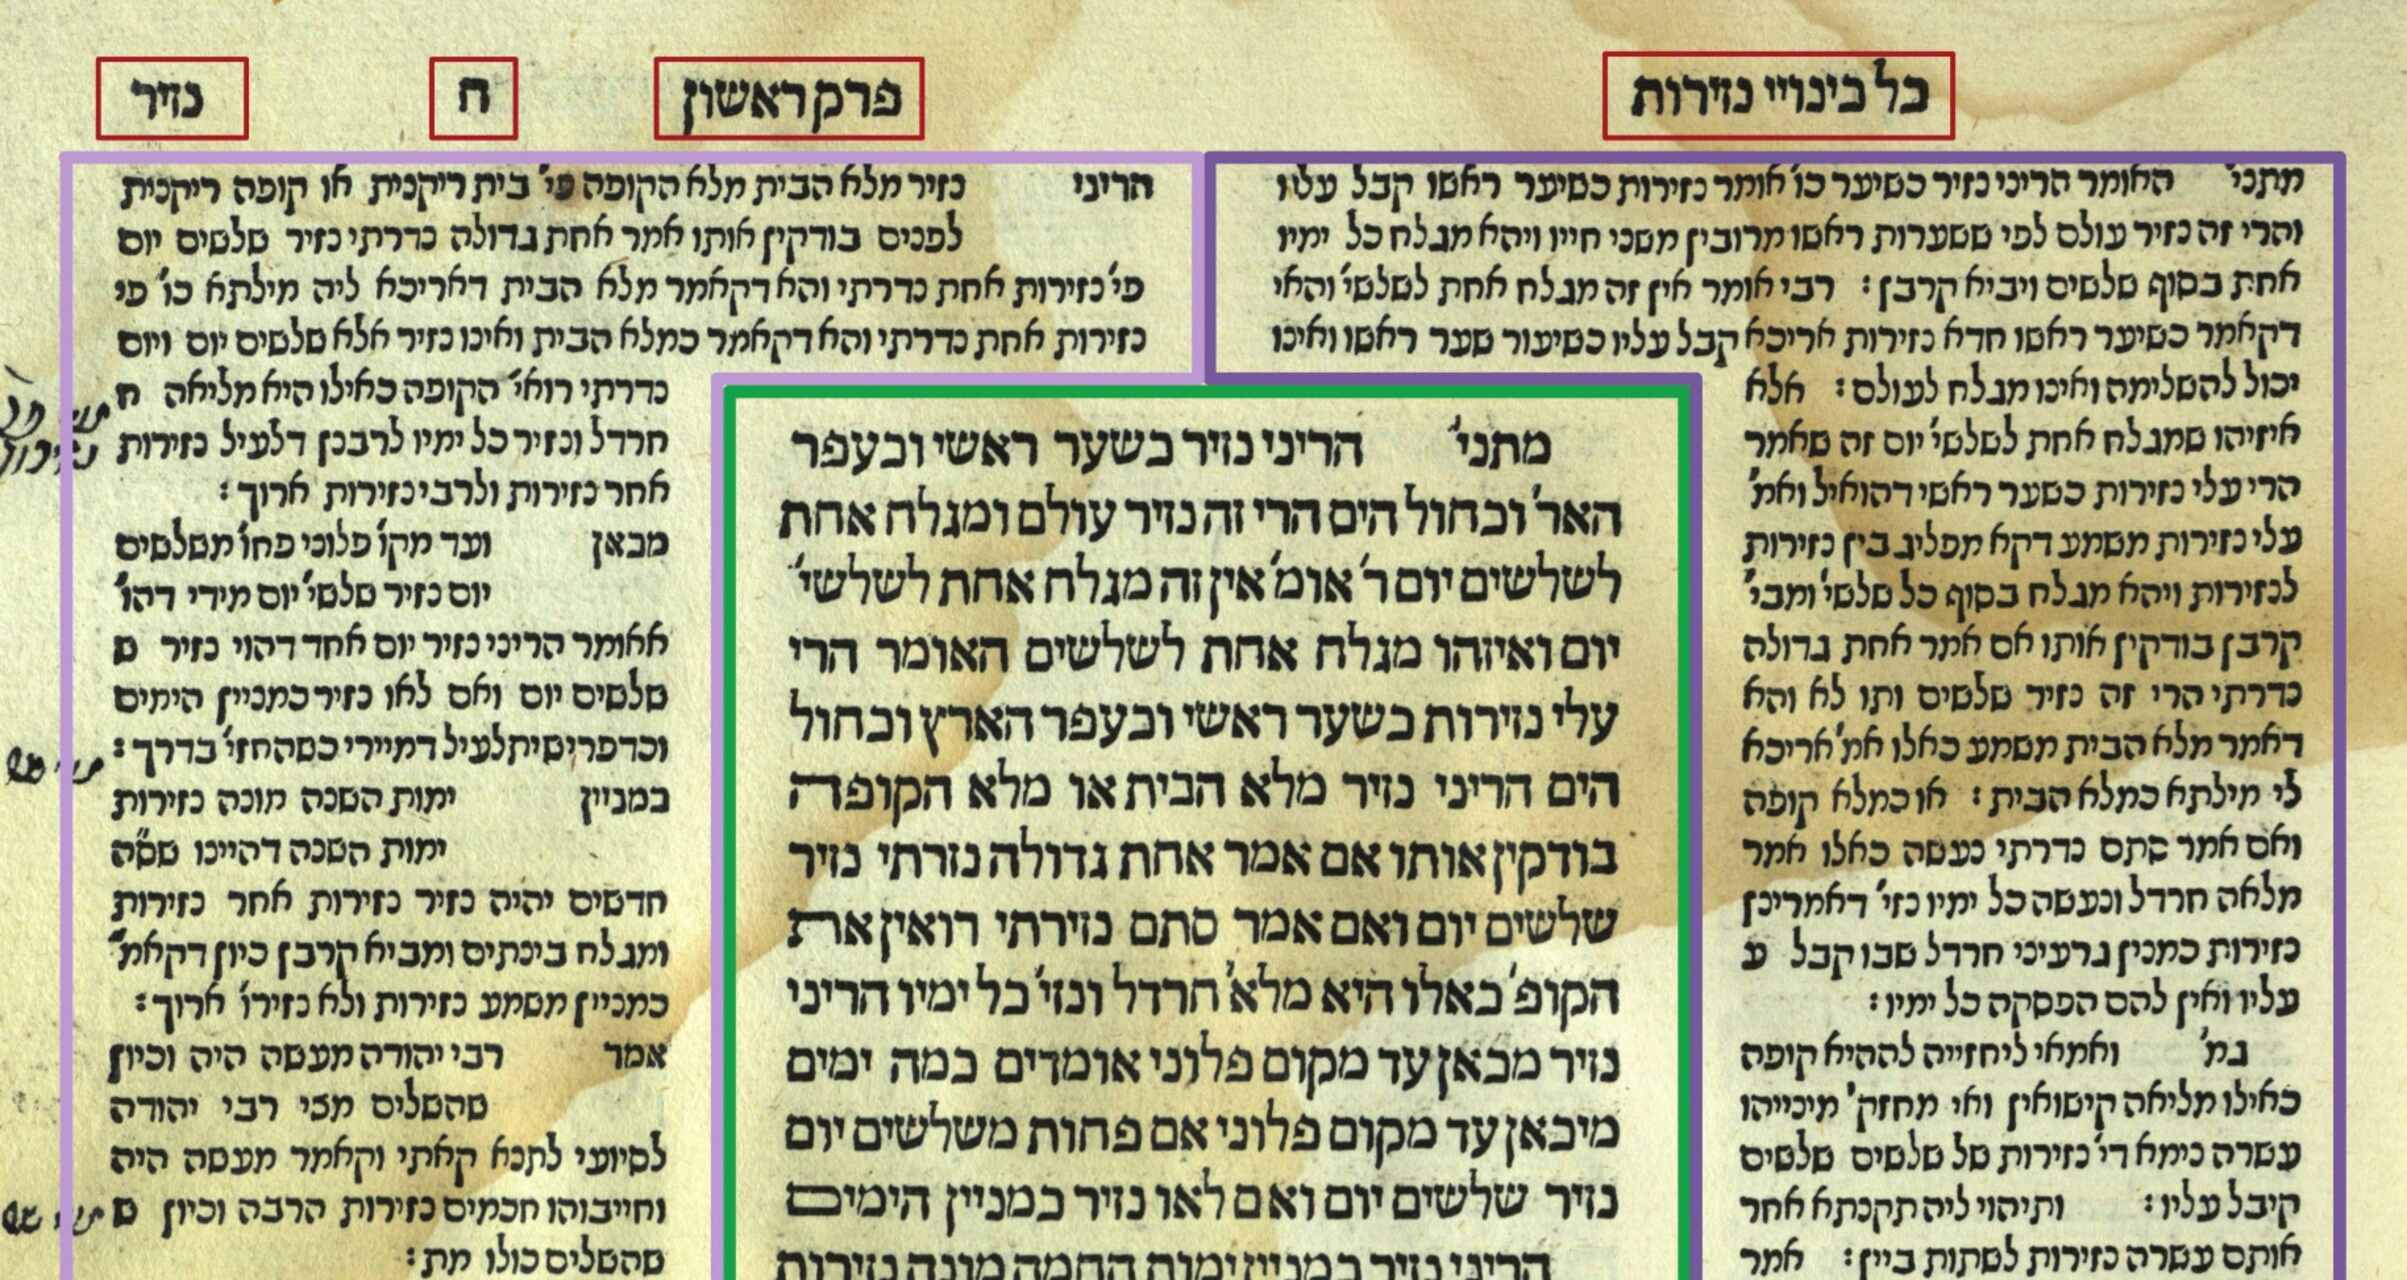 Una imagen del Talmud judío con los comentarios en los márgenes.